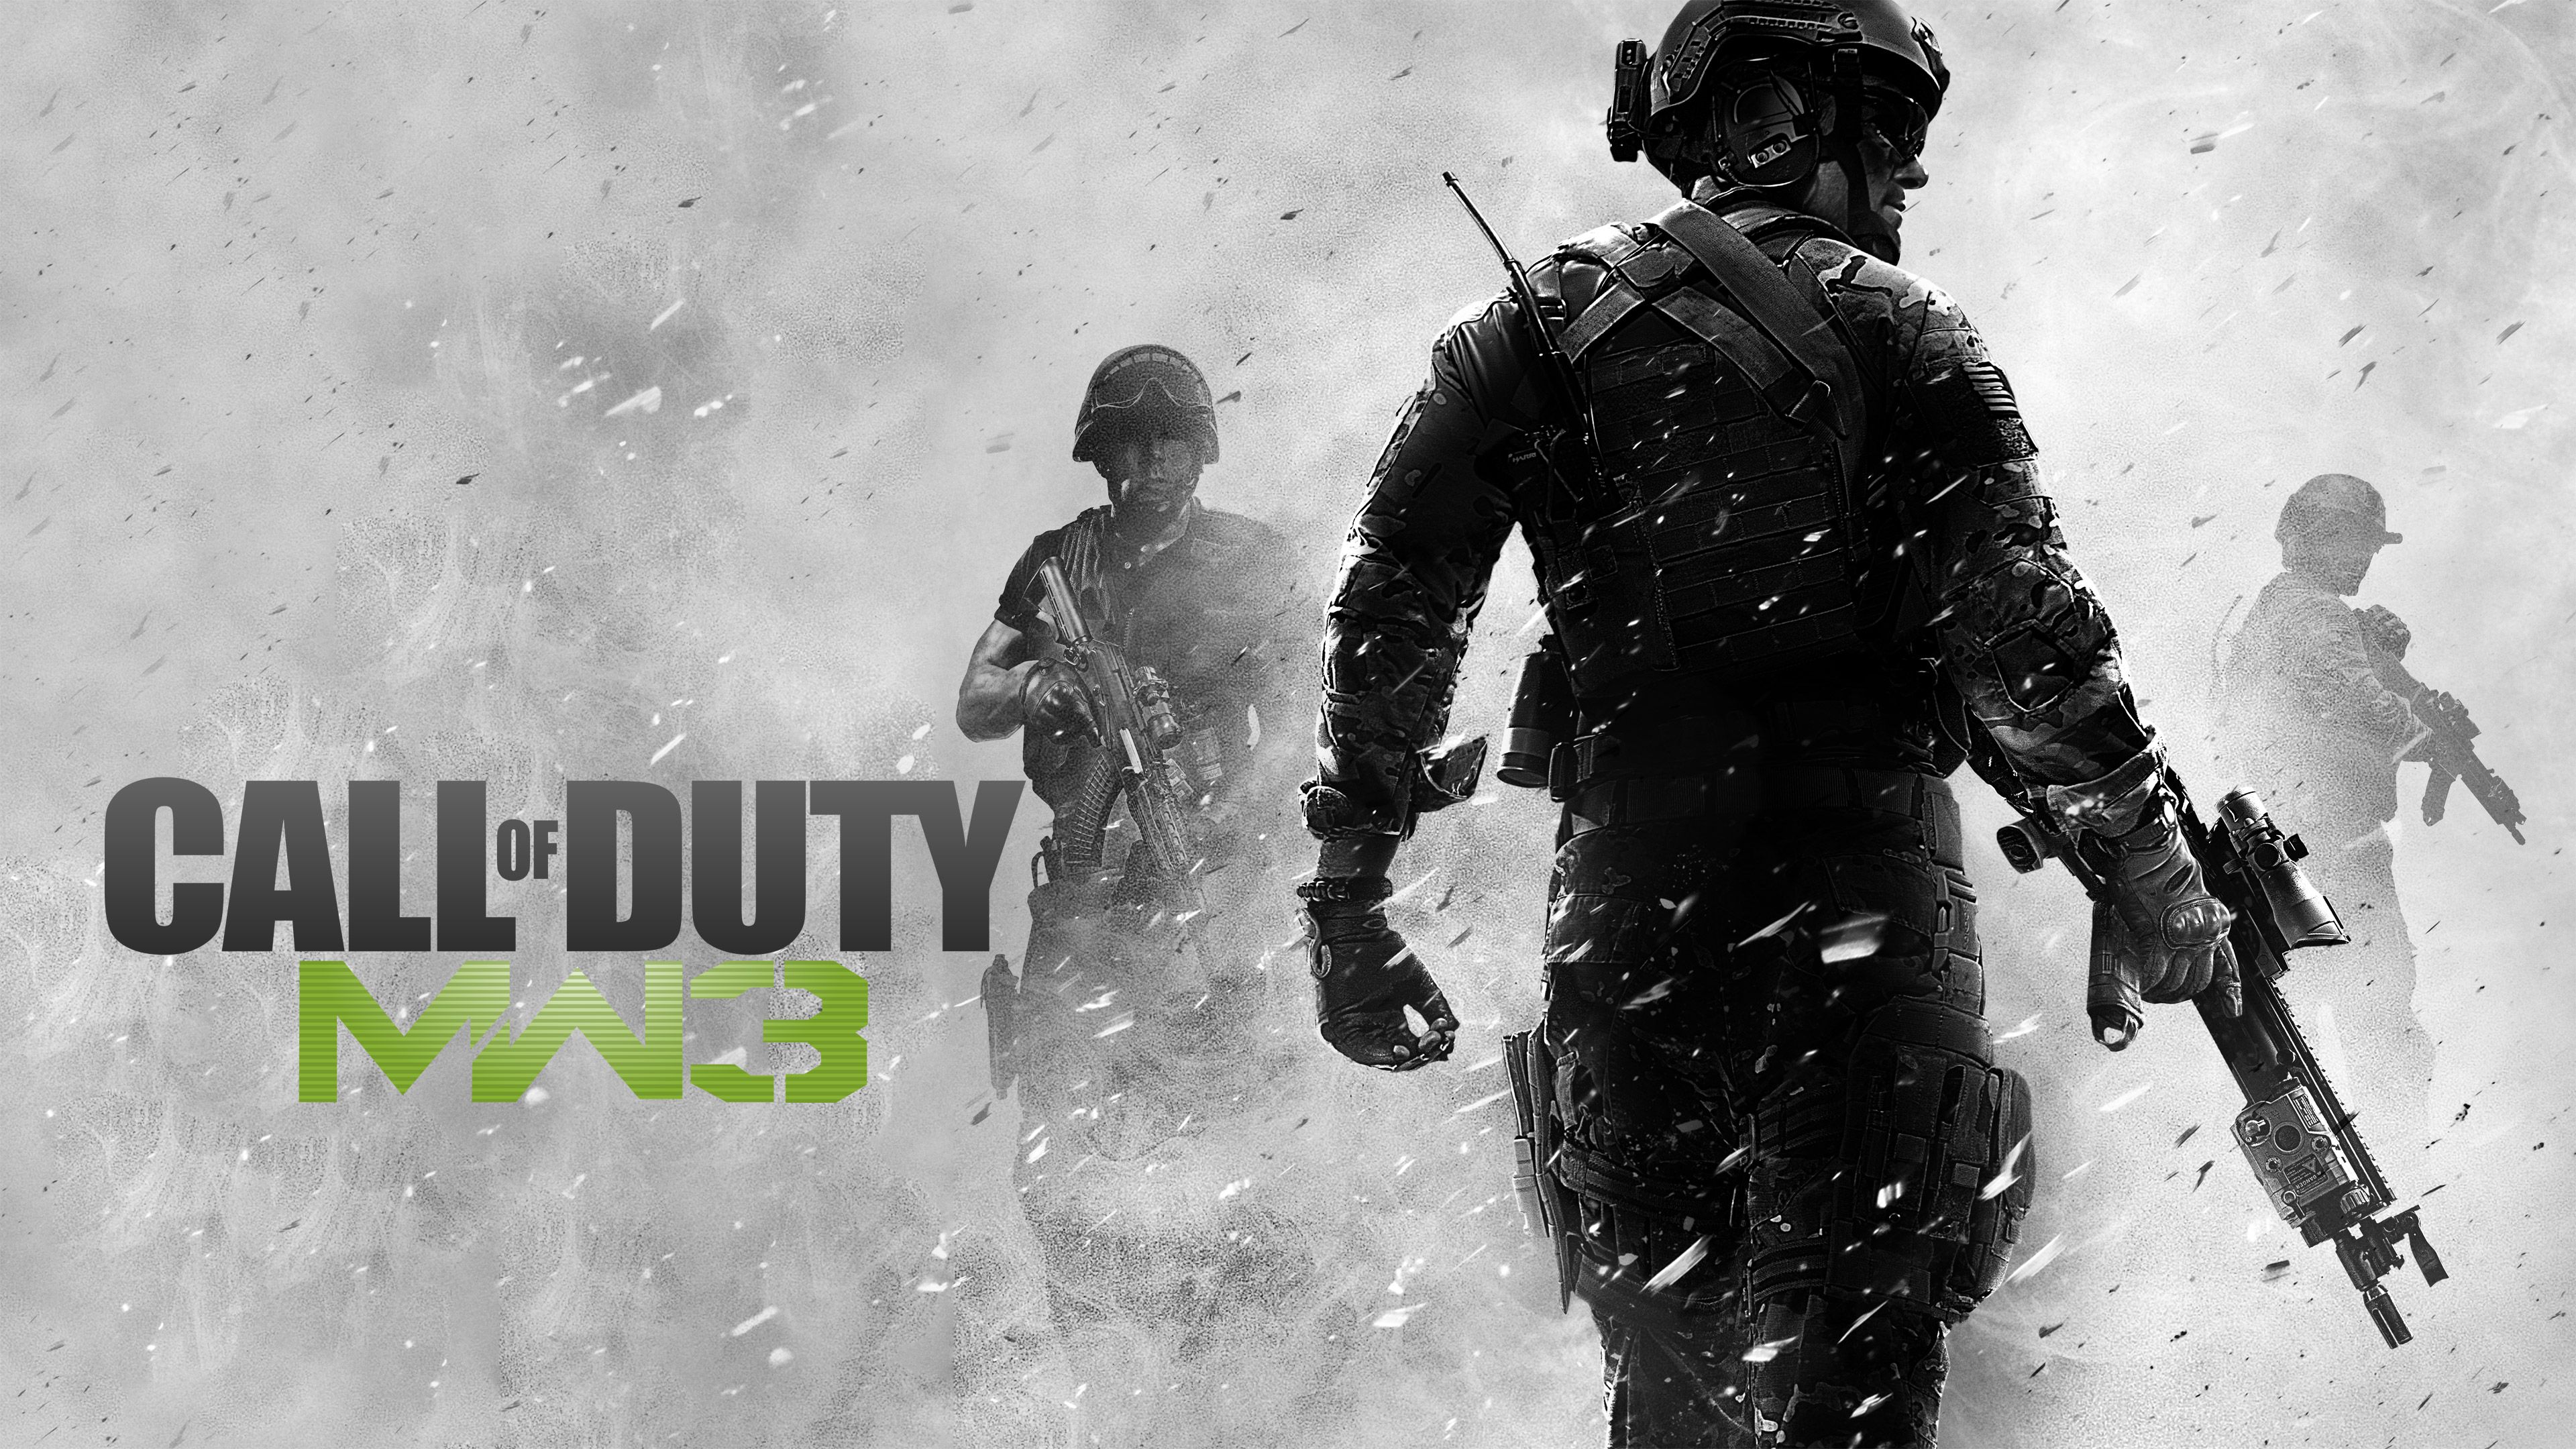 Call Of Duty Modern Warfare 3 4k, HD Games, 4k Wallpaper, Image